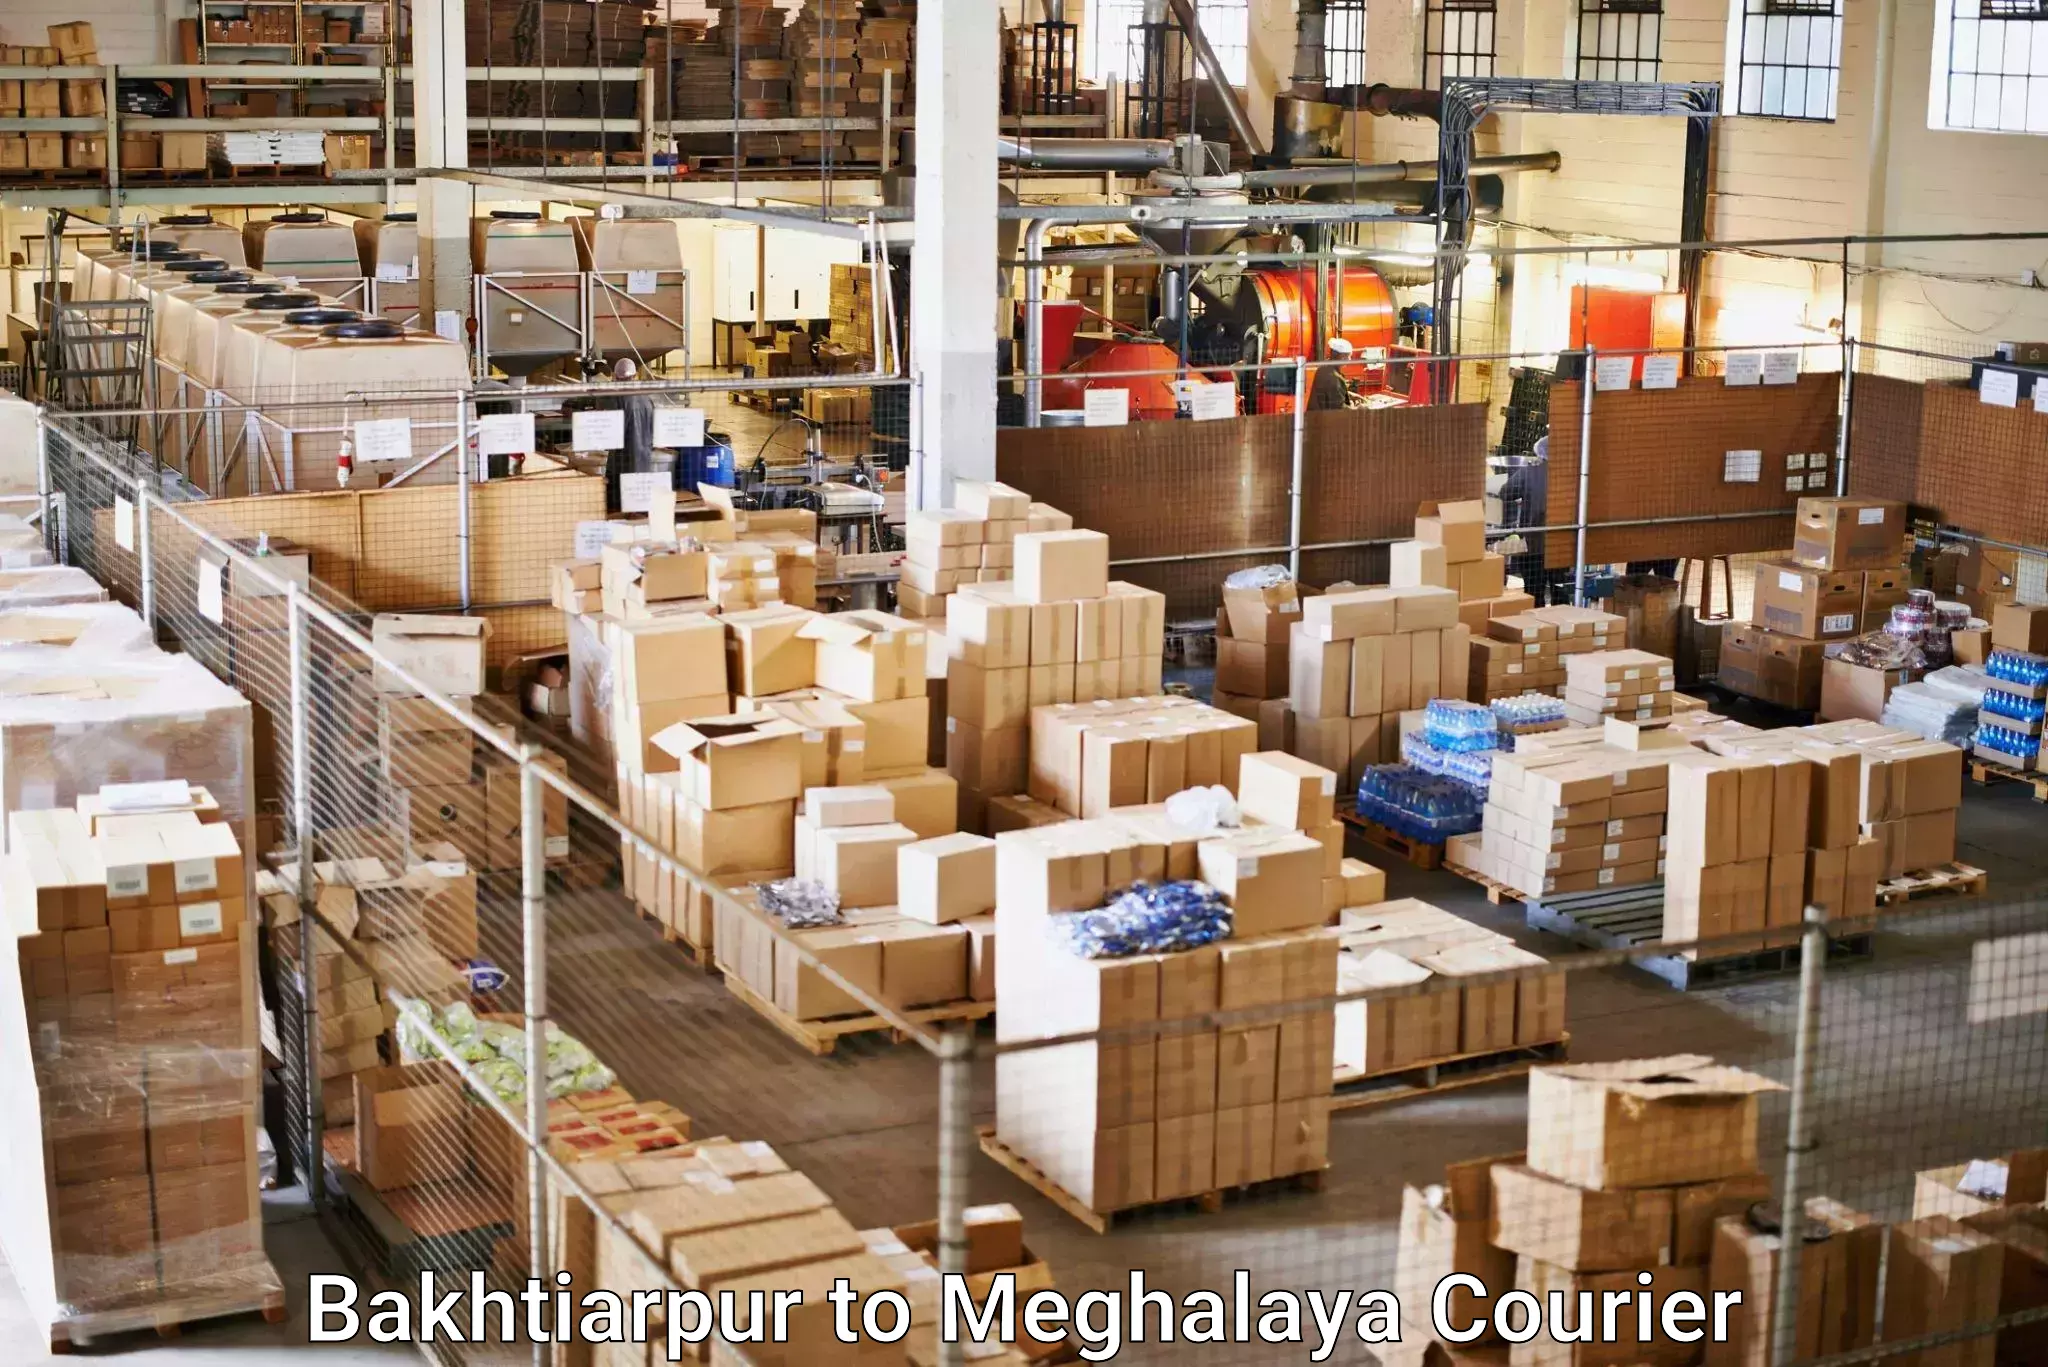 Optimized delivery routes Bakhtiarpur to Dkhiah West